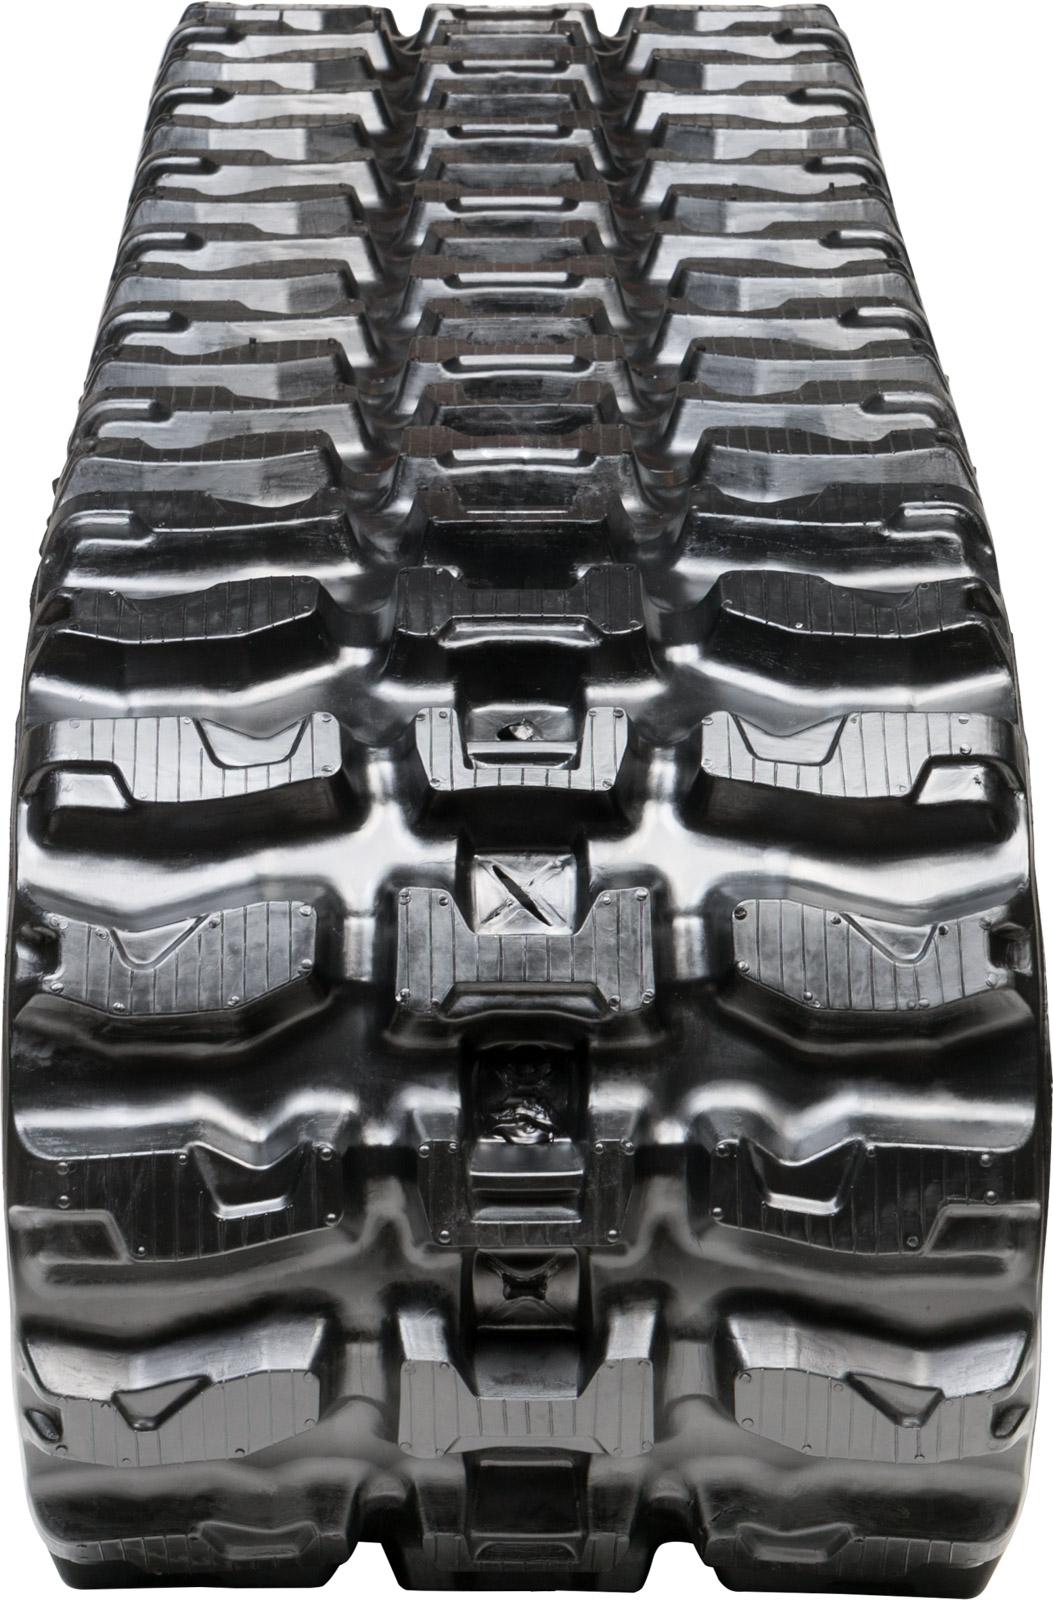 set of 2 18" heavy duty xt pattern rubber track (450x86bx52)